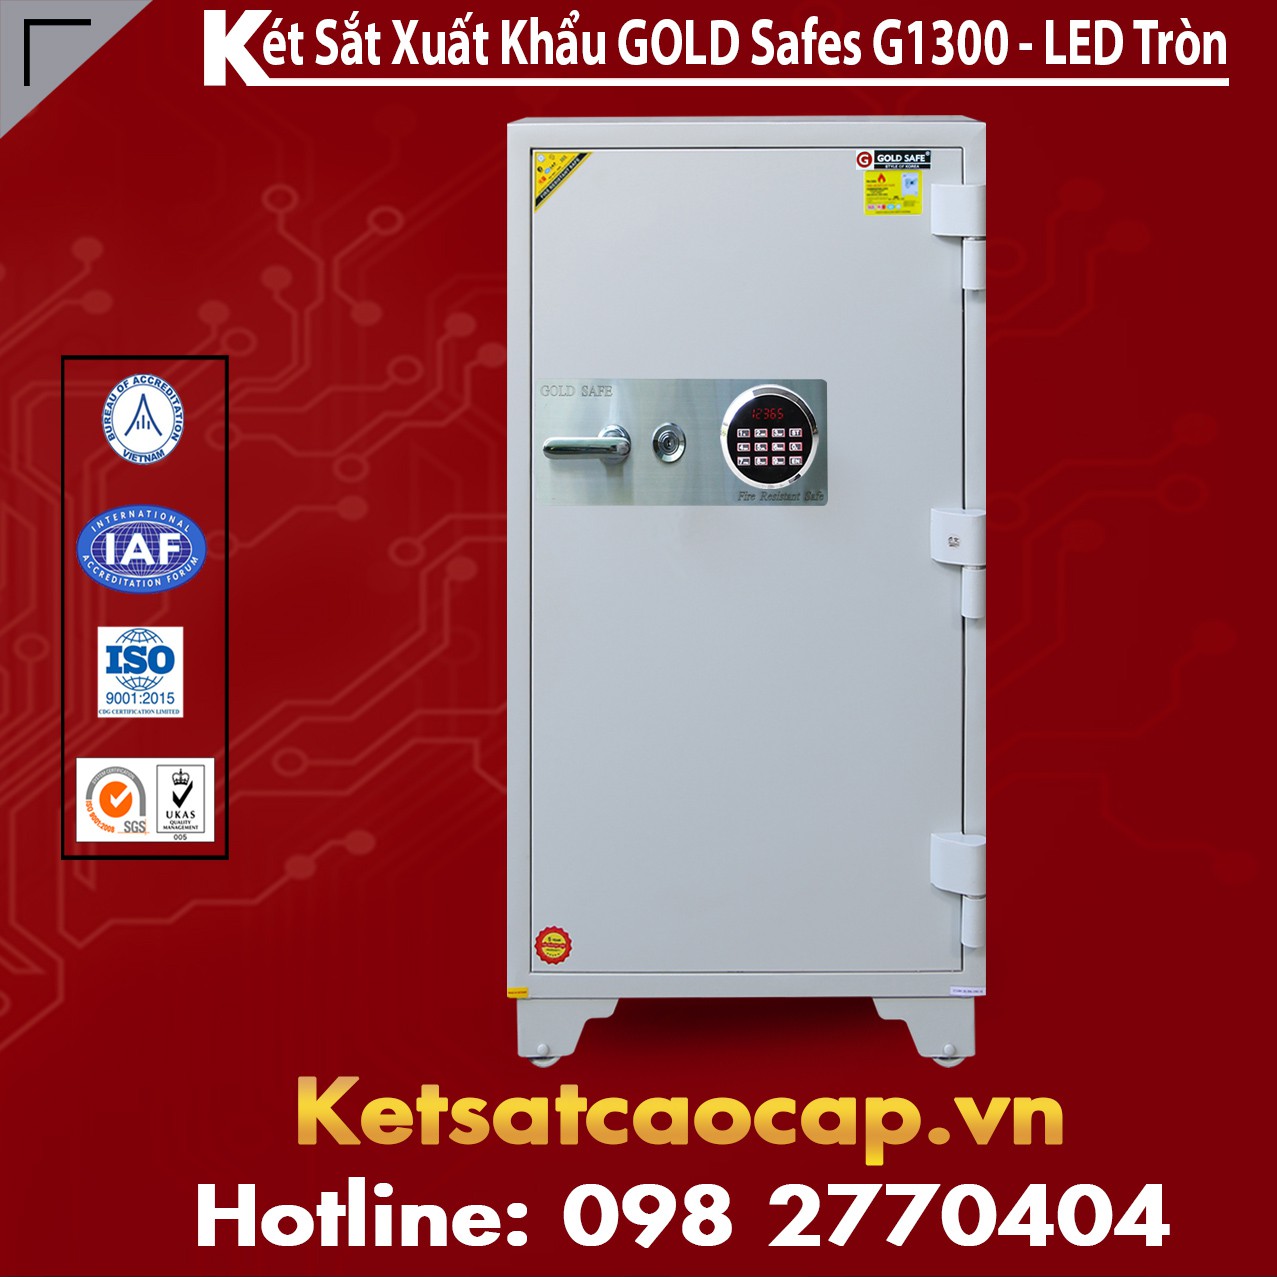 Két Sắt Phát Lộc GOLD SAFES GC1300 LED Tròn